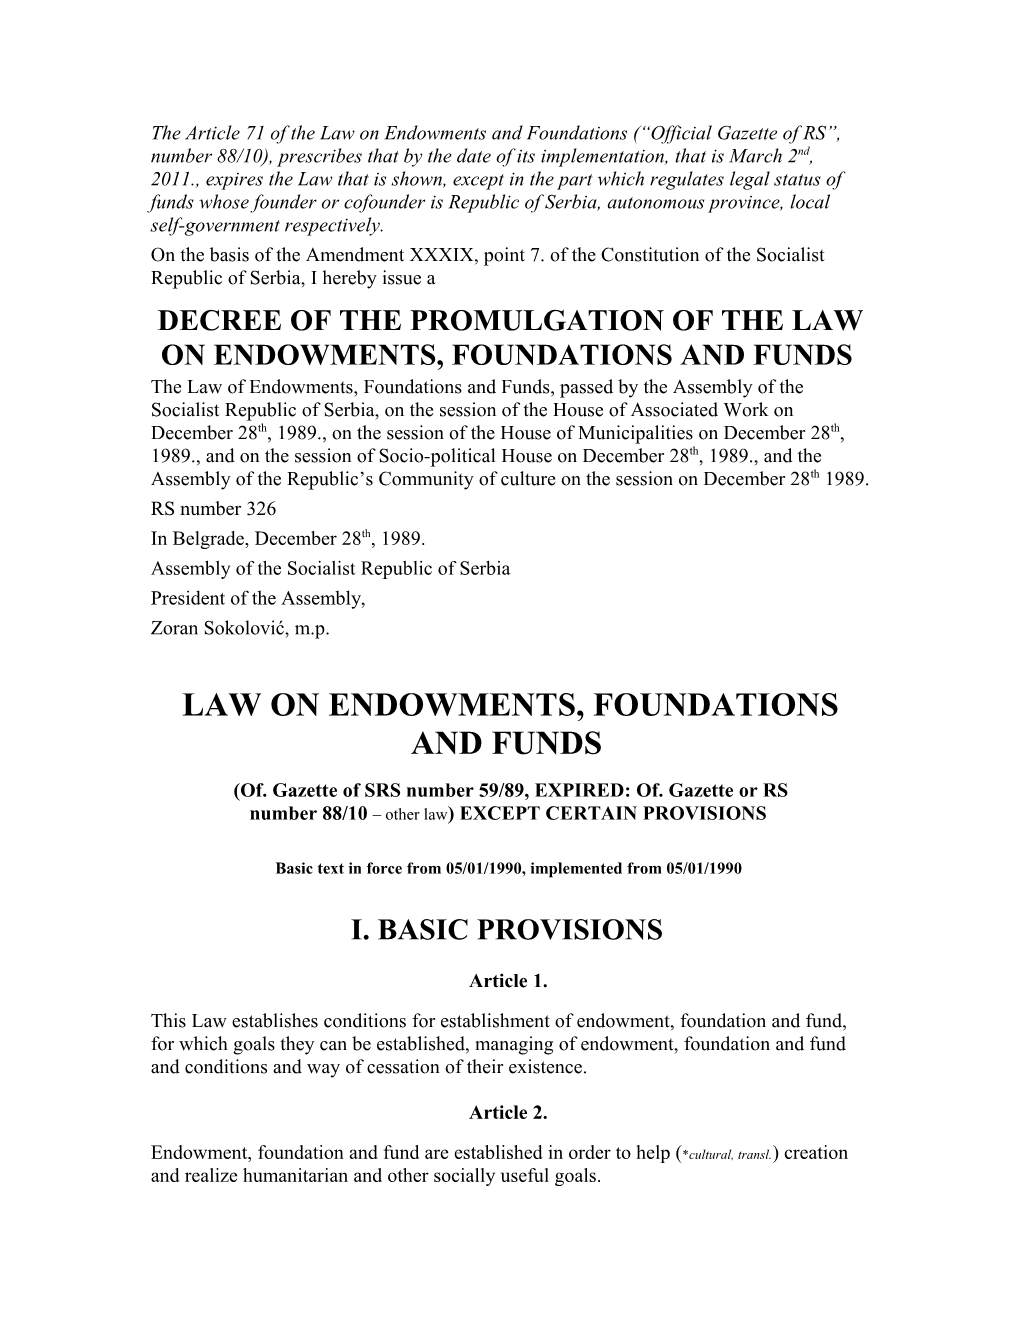 Zakon O Zaduzbinama, Fondacijama I Fondovima